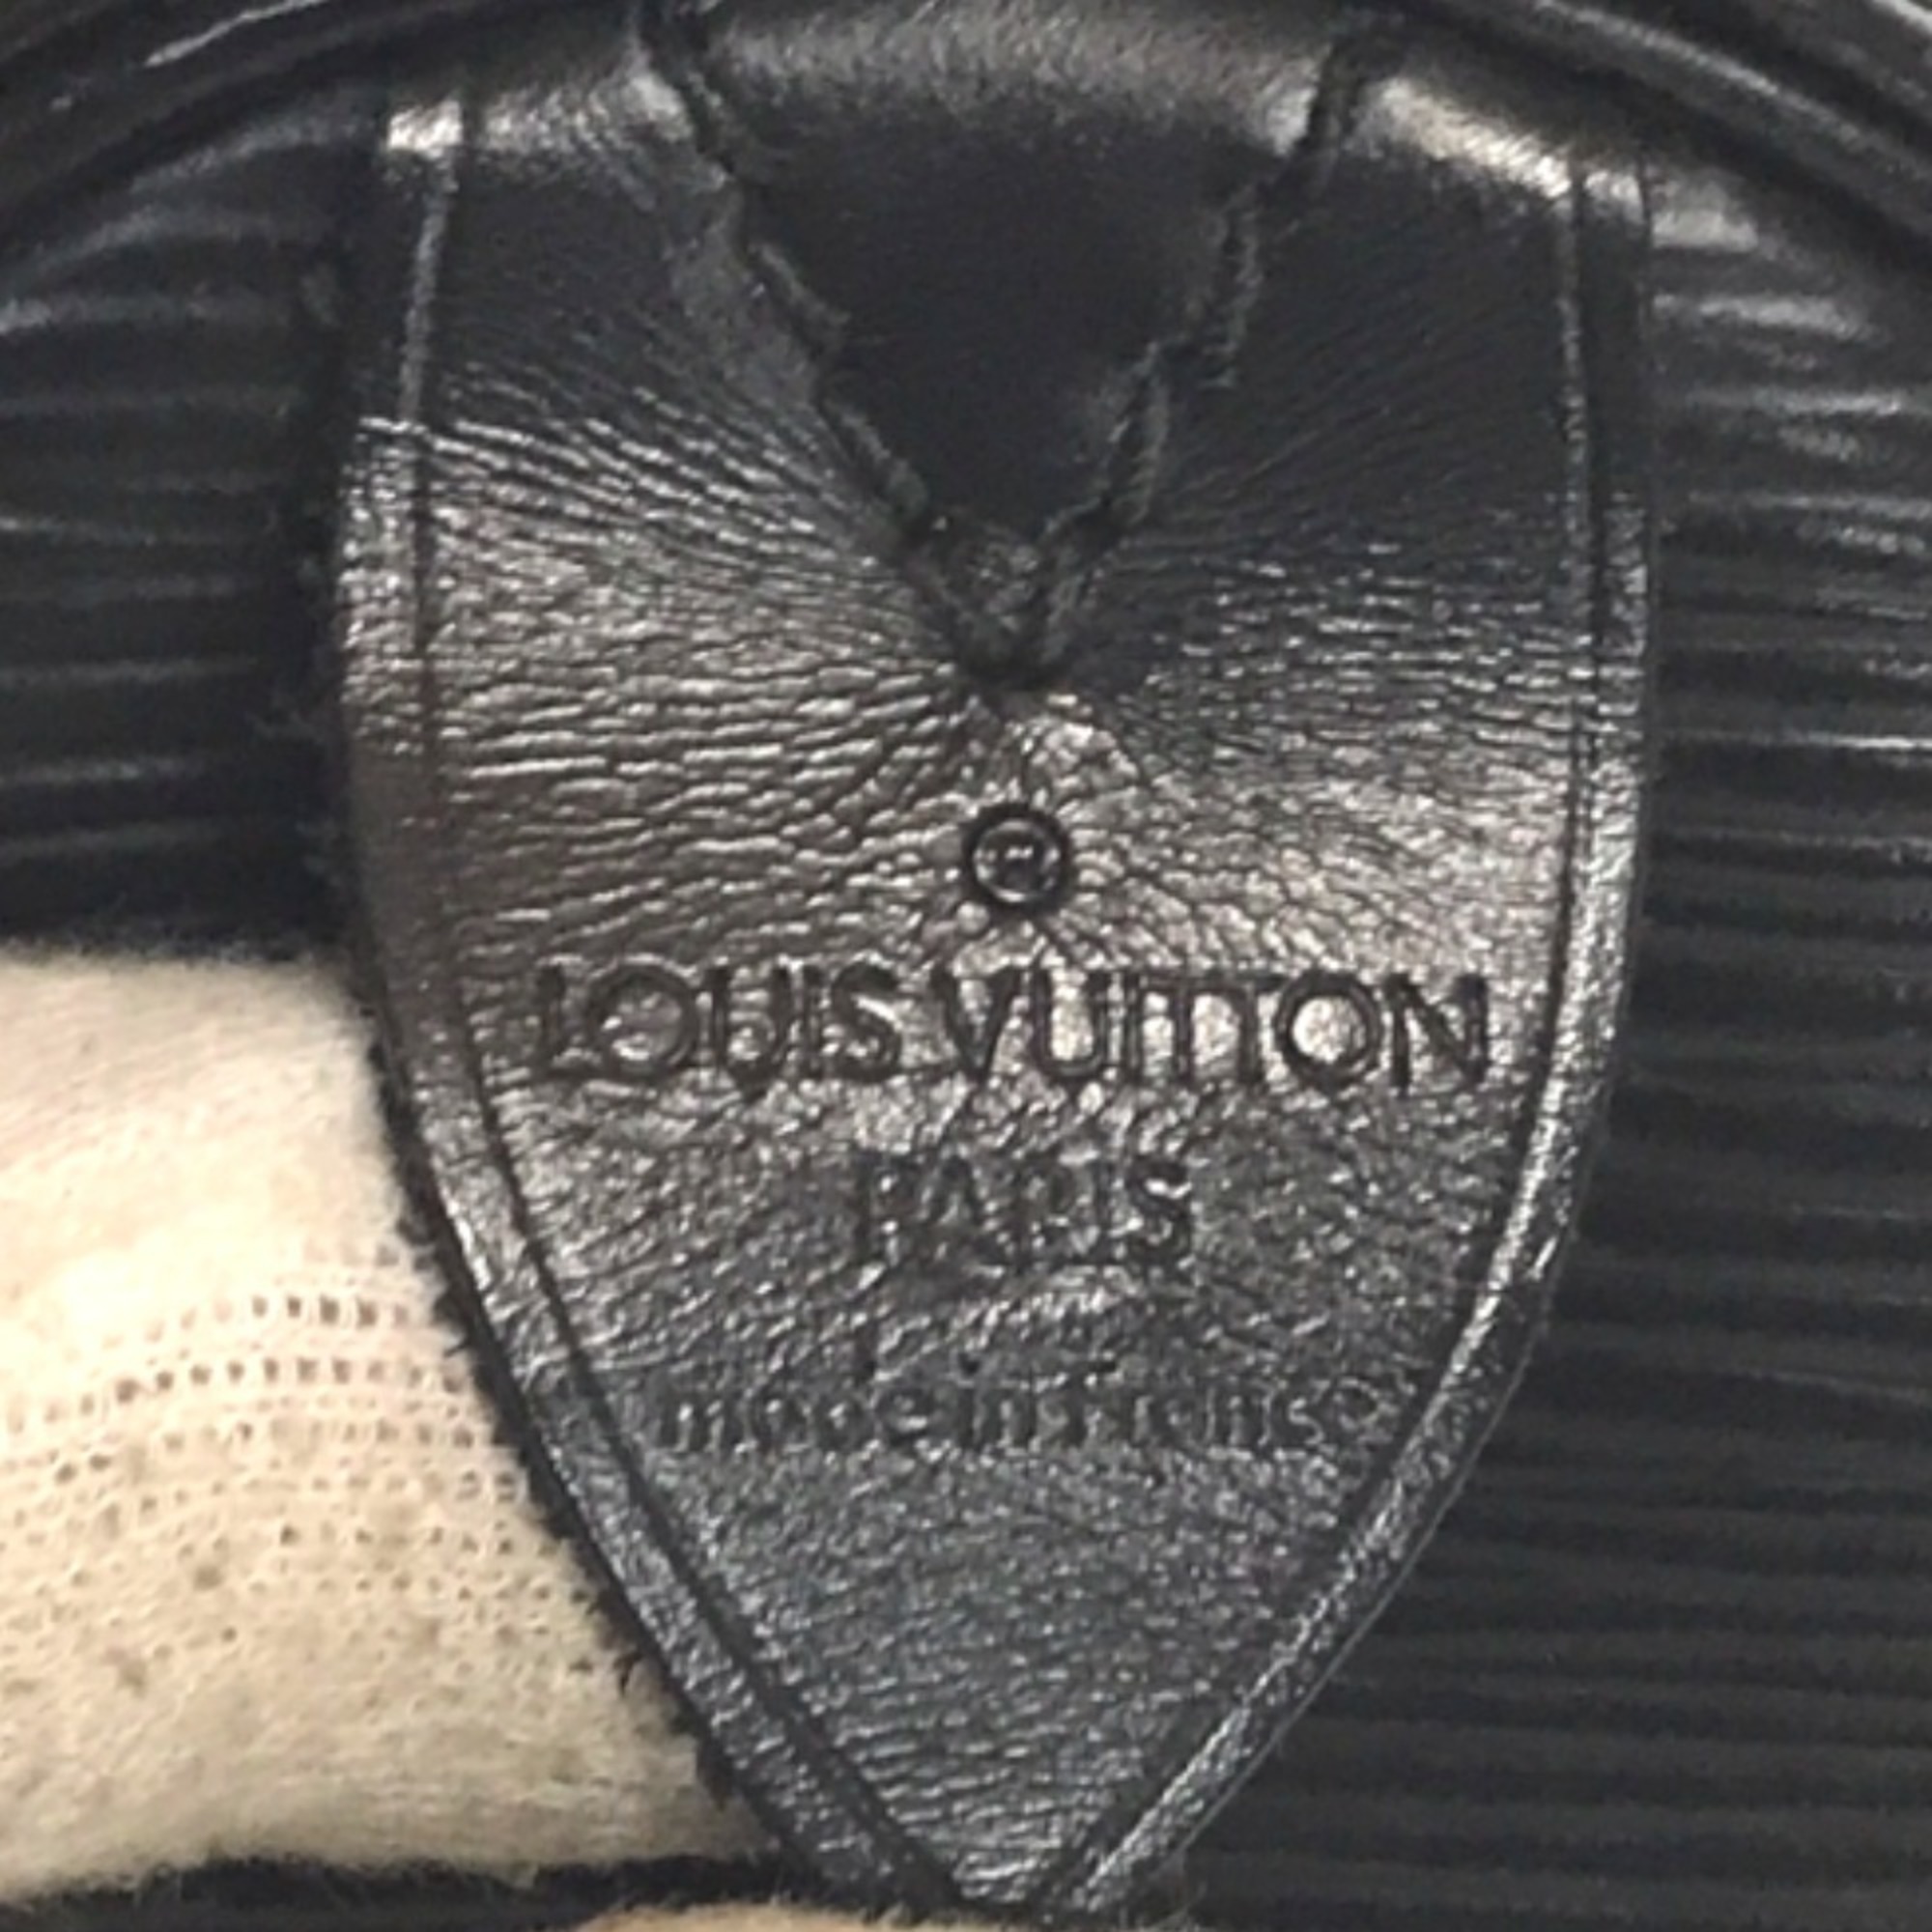 LOUIS VUITTON Louis Vuitton Speedy 30 Boston Bag Tote Men's Epi Leather Black M59022